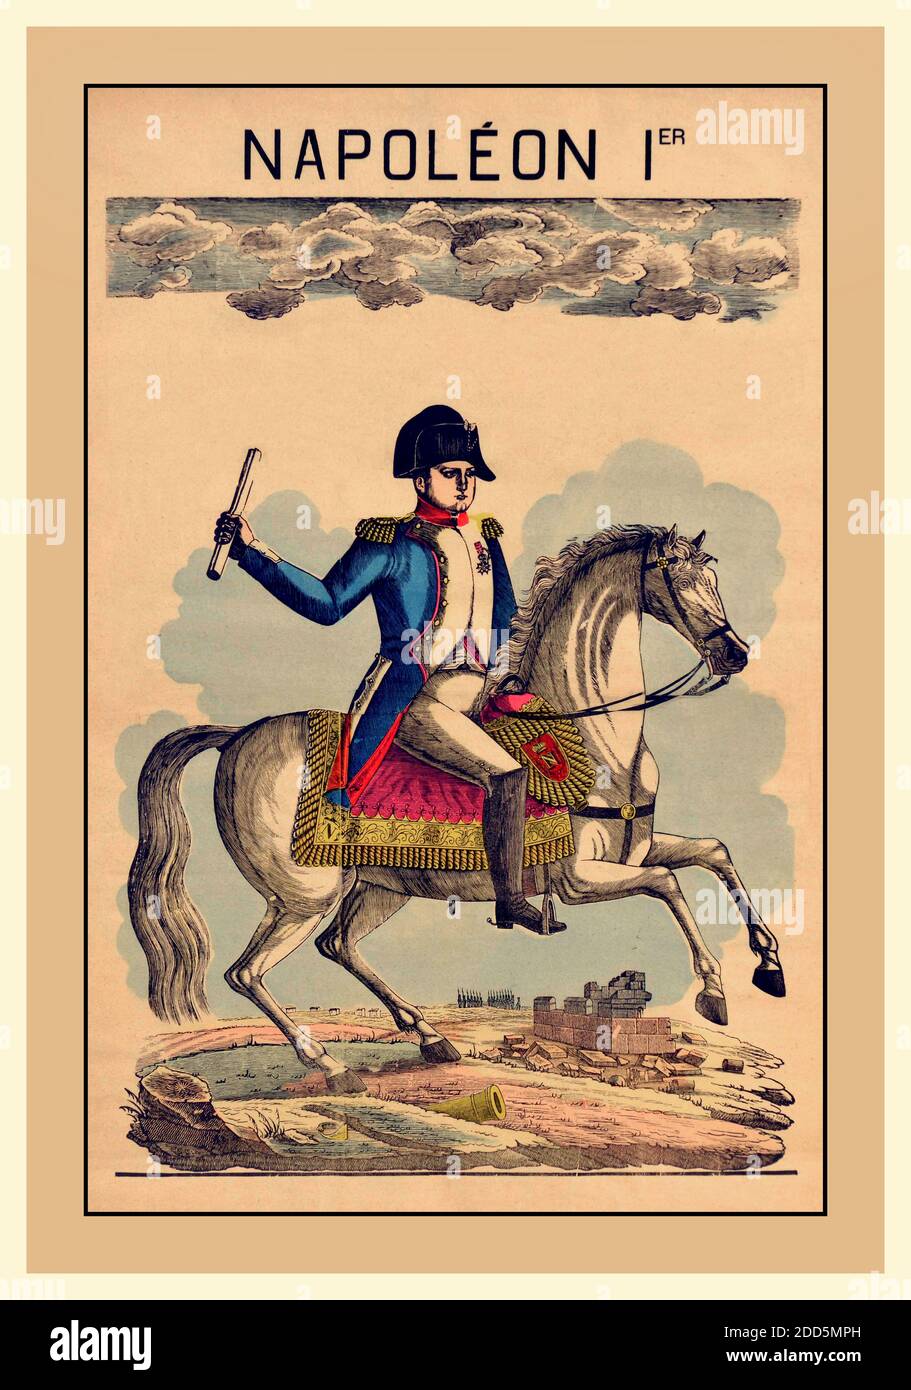 NAPOLEON 1er KRIEGSPLAKAT' NAPOLEON Ier BONAPARTE PFERD antikes epinaldruckplakat für Napoleon 1 auf seinem Pferd. Napoleon Bonaparte (15. August 1769 – 5. Mai 1821), geborener Napoleone di Buonaparte, mit dem Beinamen 'Le Corse' (der Korse) oder 'Le Petit Caporal' (der kleine Korporal), war ein französischer Staatsmann und Militärführer, der während der Französischen Revolution als Artilleriekommandeur berüchtigt wurde. Er führte viele erfolgreiche Kampagnen während der französischen Revolutionskriege und war Kaiser der Franzosen als Napoleon I. von 1804 bis 1814 und wieder kurz in 1815 während der hundert Tage. Stockfoto